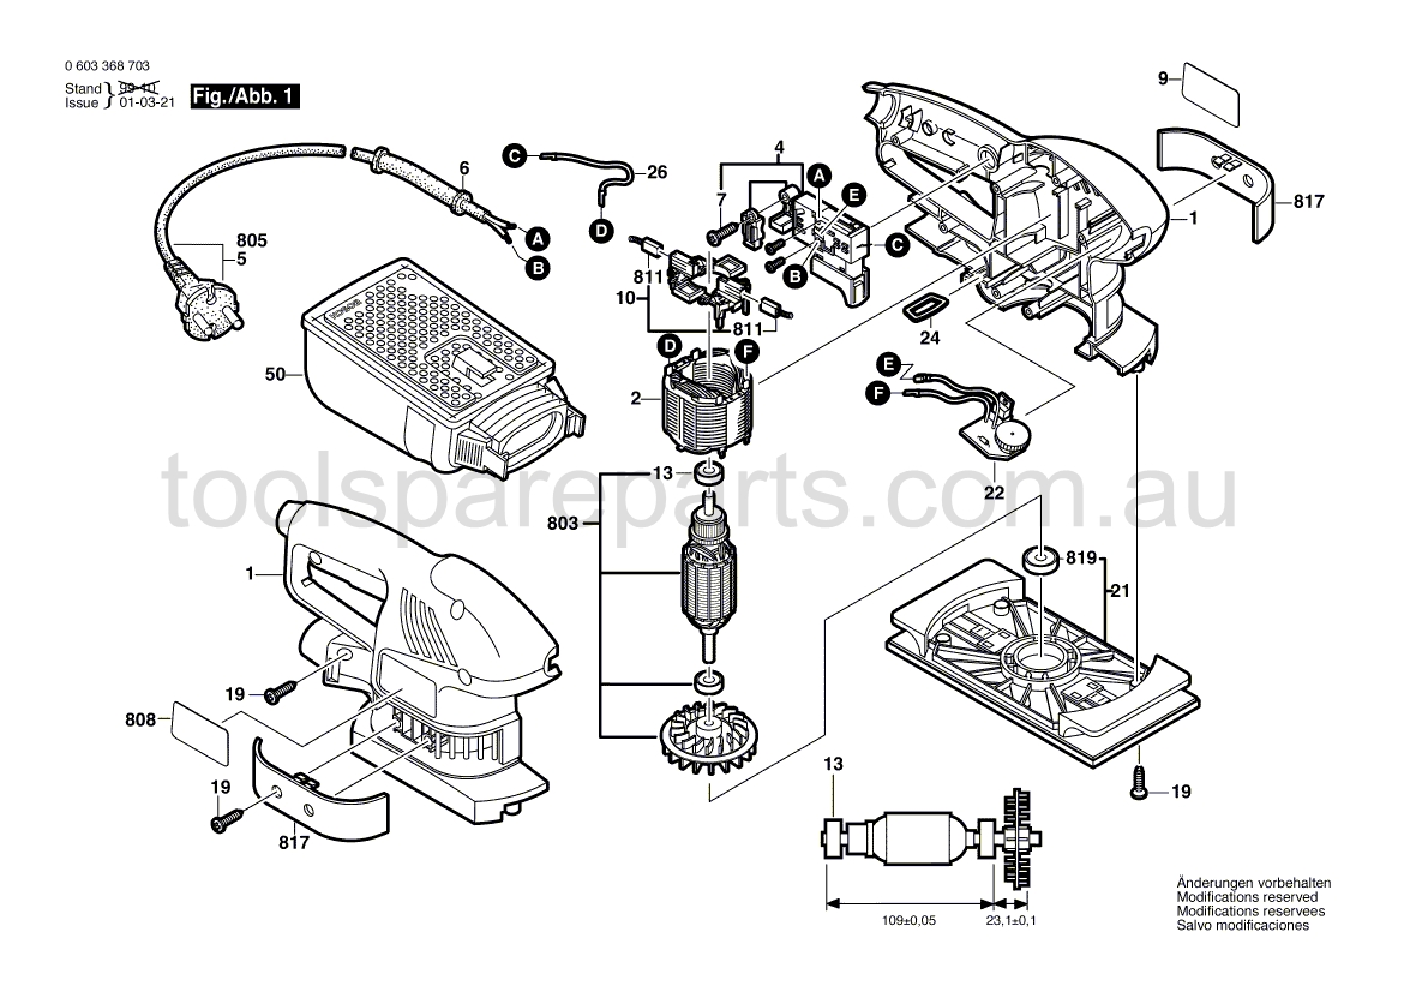 Bosch PSS 240 AE 0603368783  Diagram 1